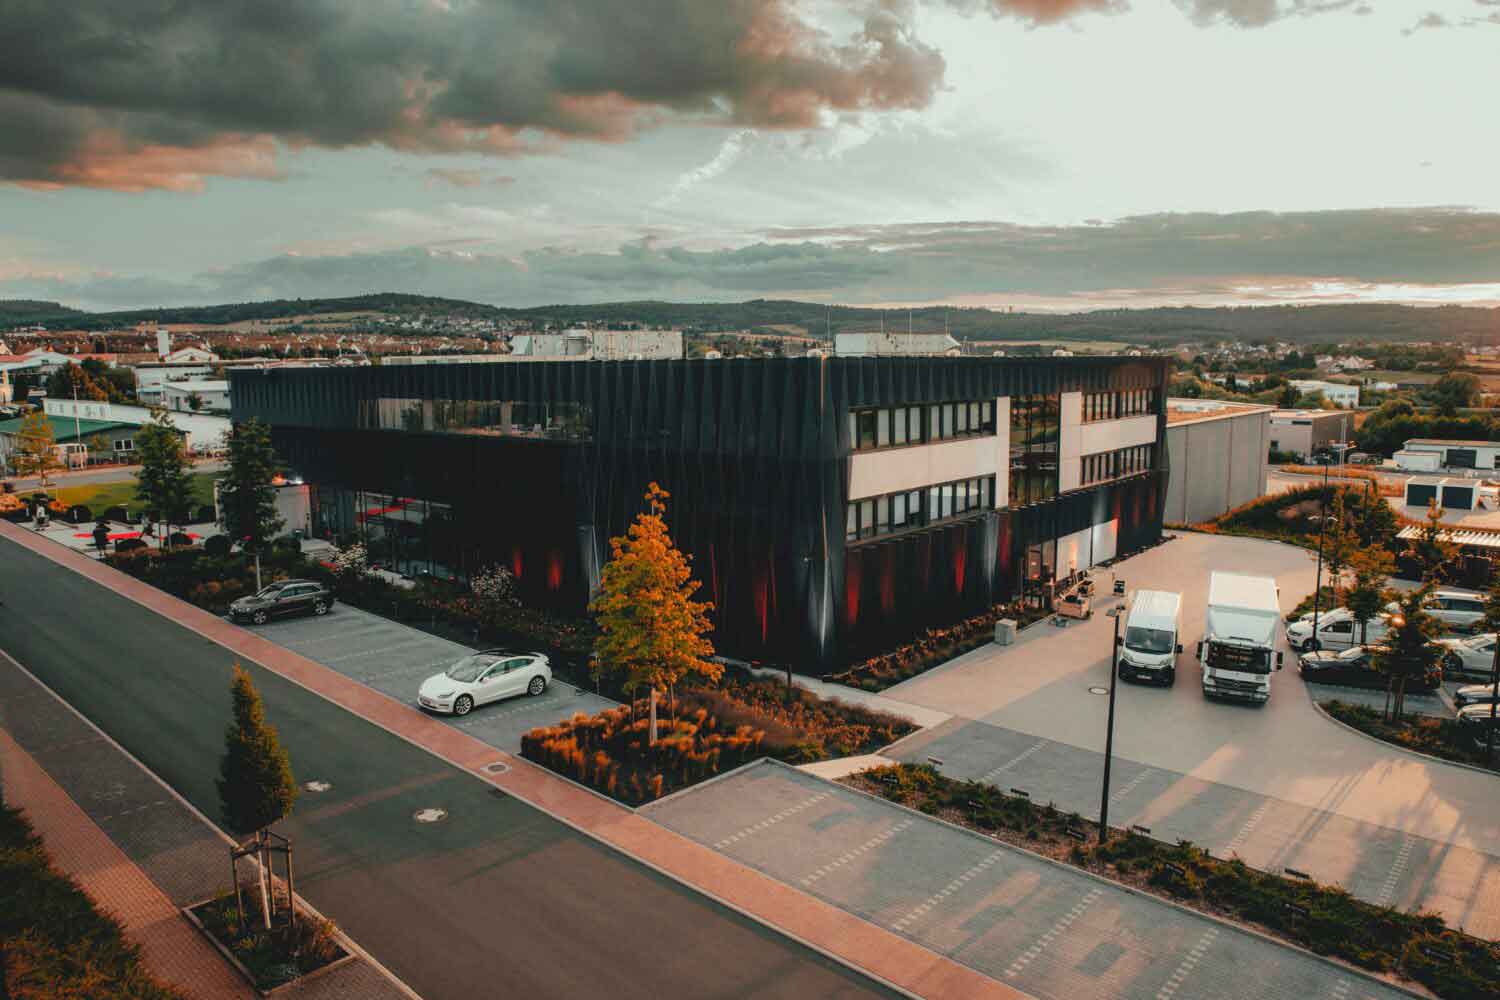 Foto von großem viereckigen Bürogebäude umgeben von vielen Parkplätzen auf denen zum Teil Elektrofahrzeuge stehen.